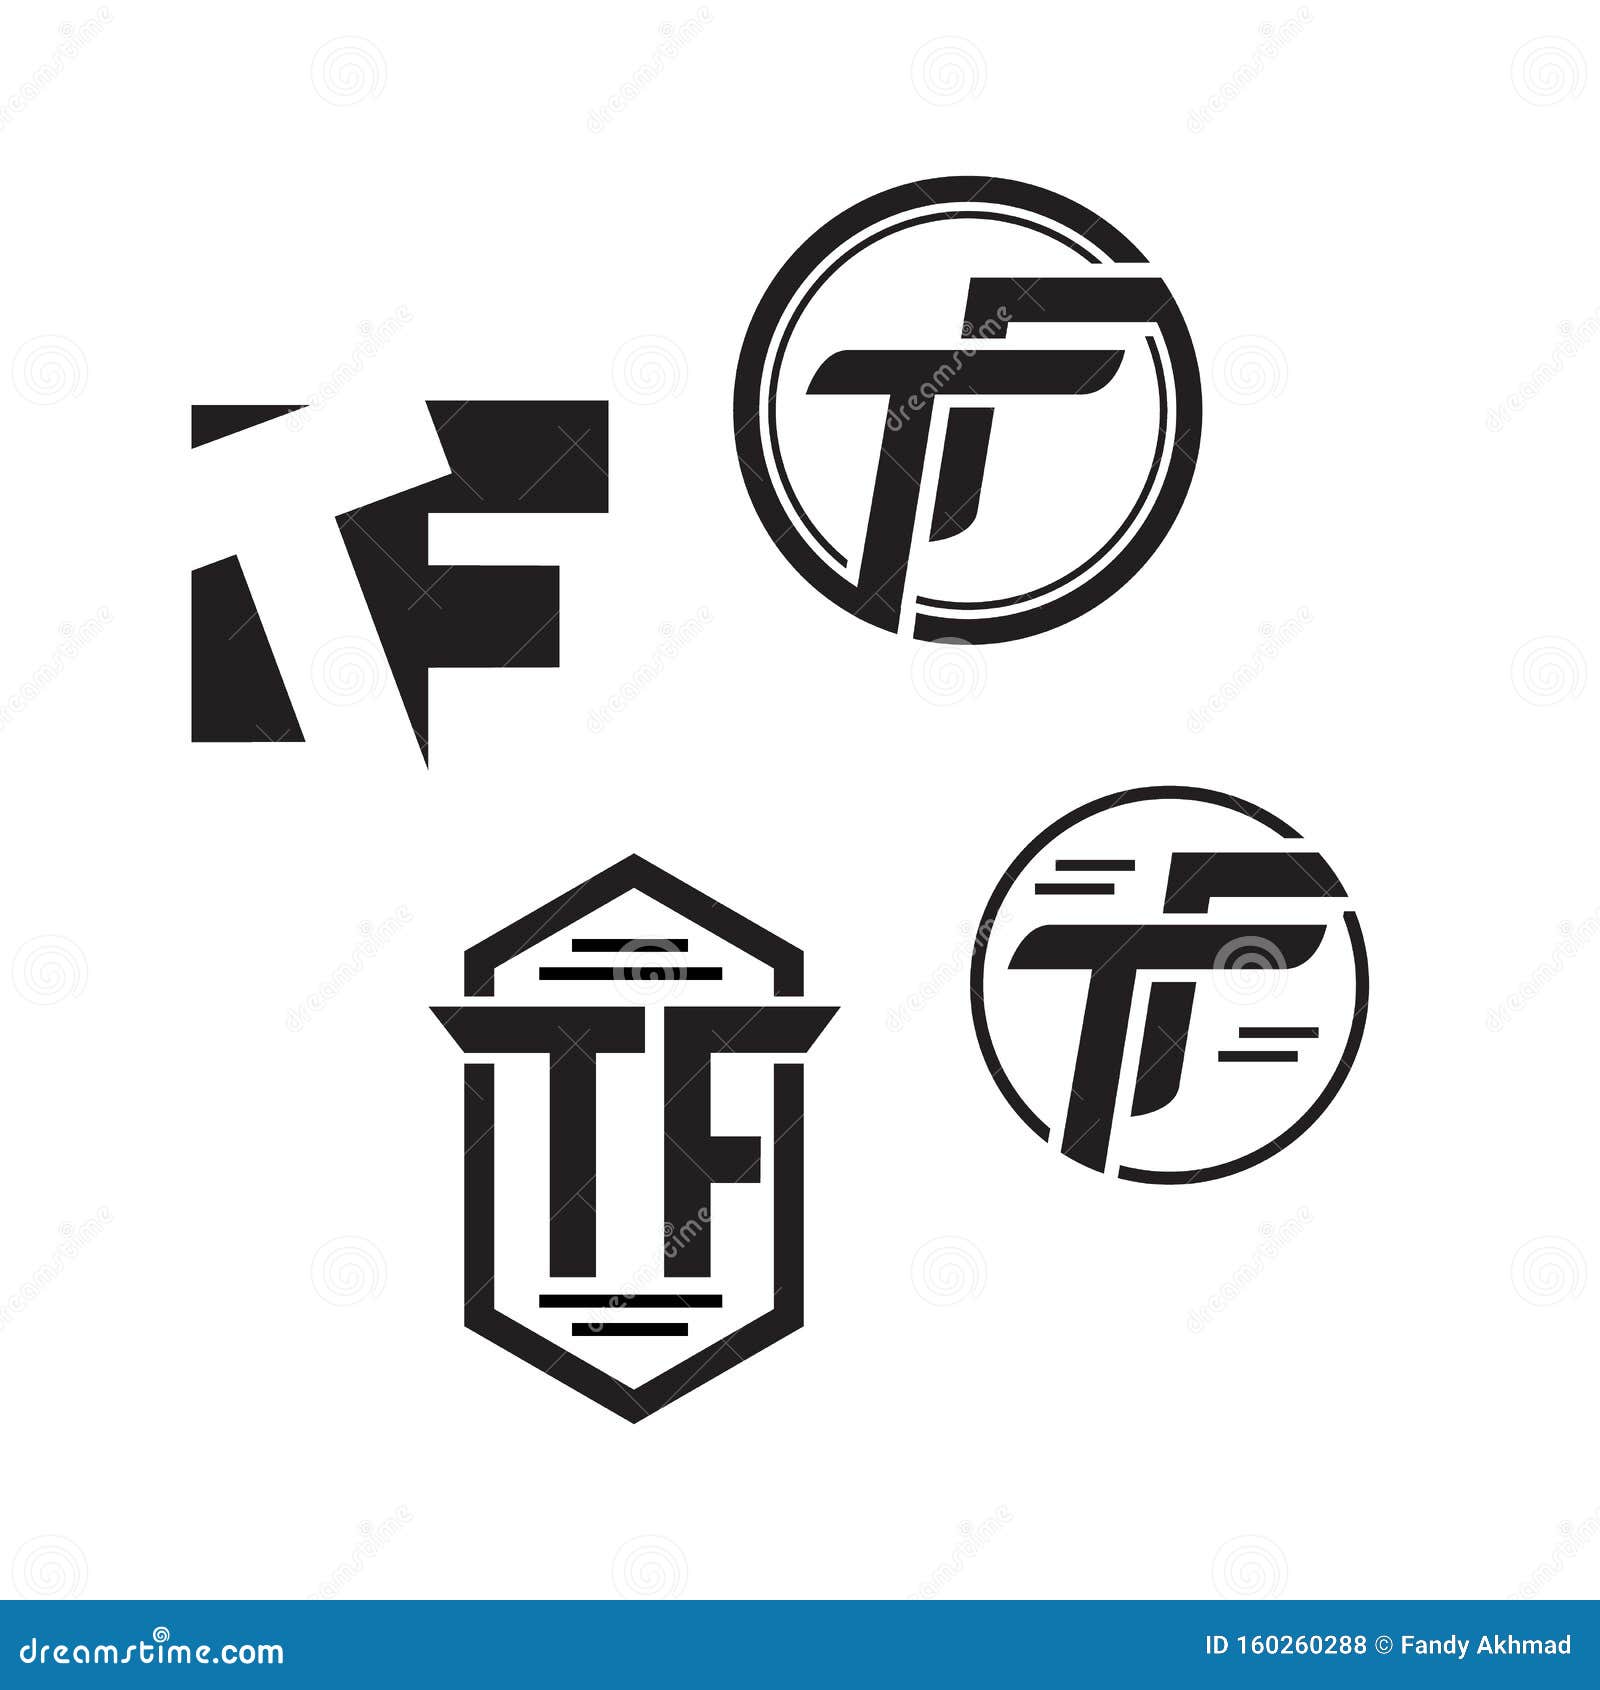 Modern T letter logo, T Modern logo